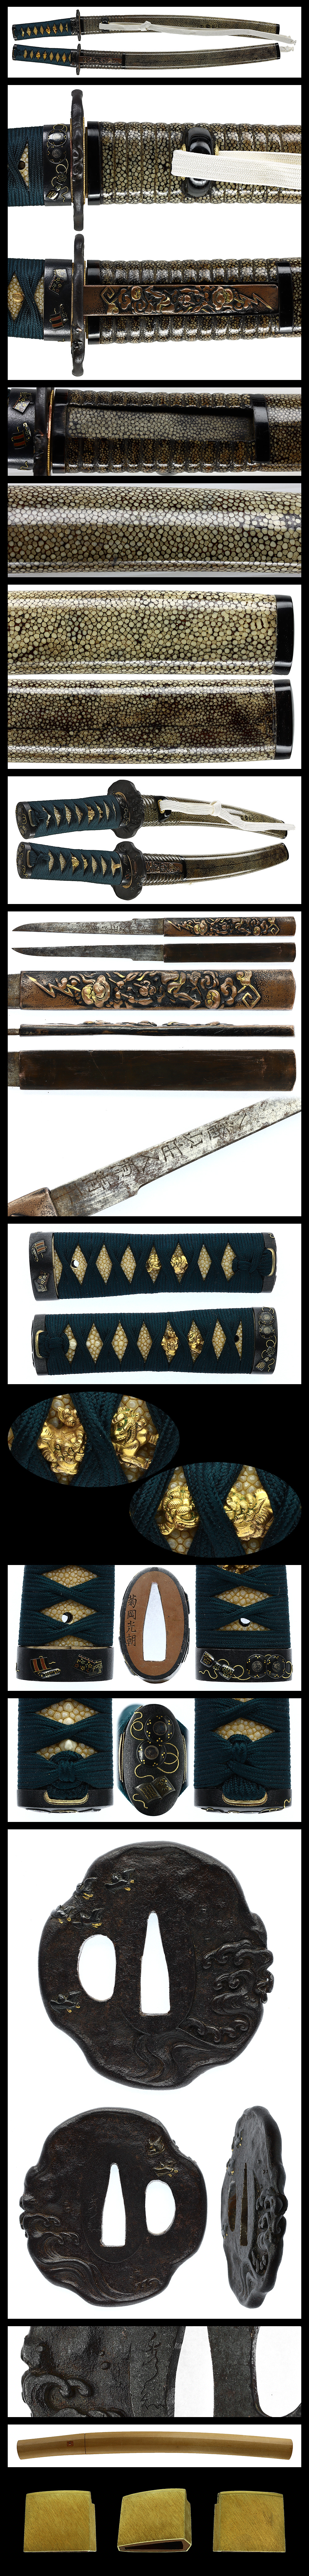 脇差:肥前国忠吉(初代)(特別保存刀剣) | 日本刀販売の葵美術